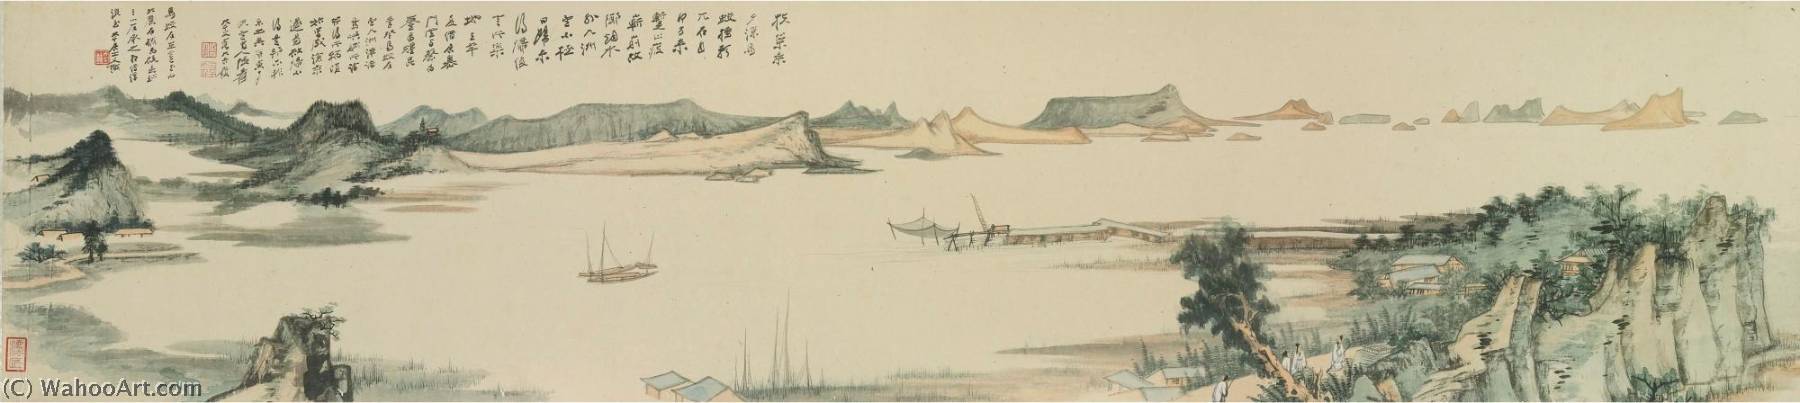 WikiOO.org - Encyclopedia of Fine Arts - Lukisan, Artwork Zhang Daqian - MIRROR LAKE